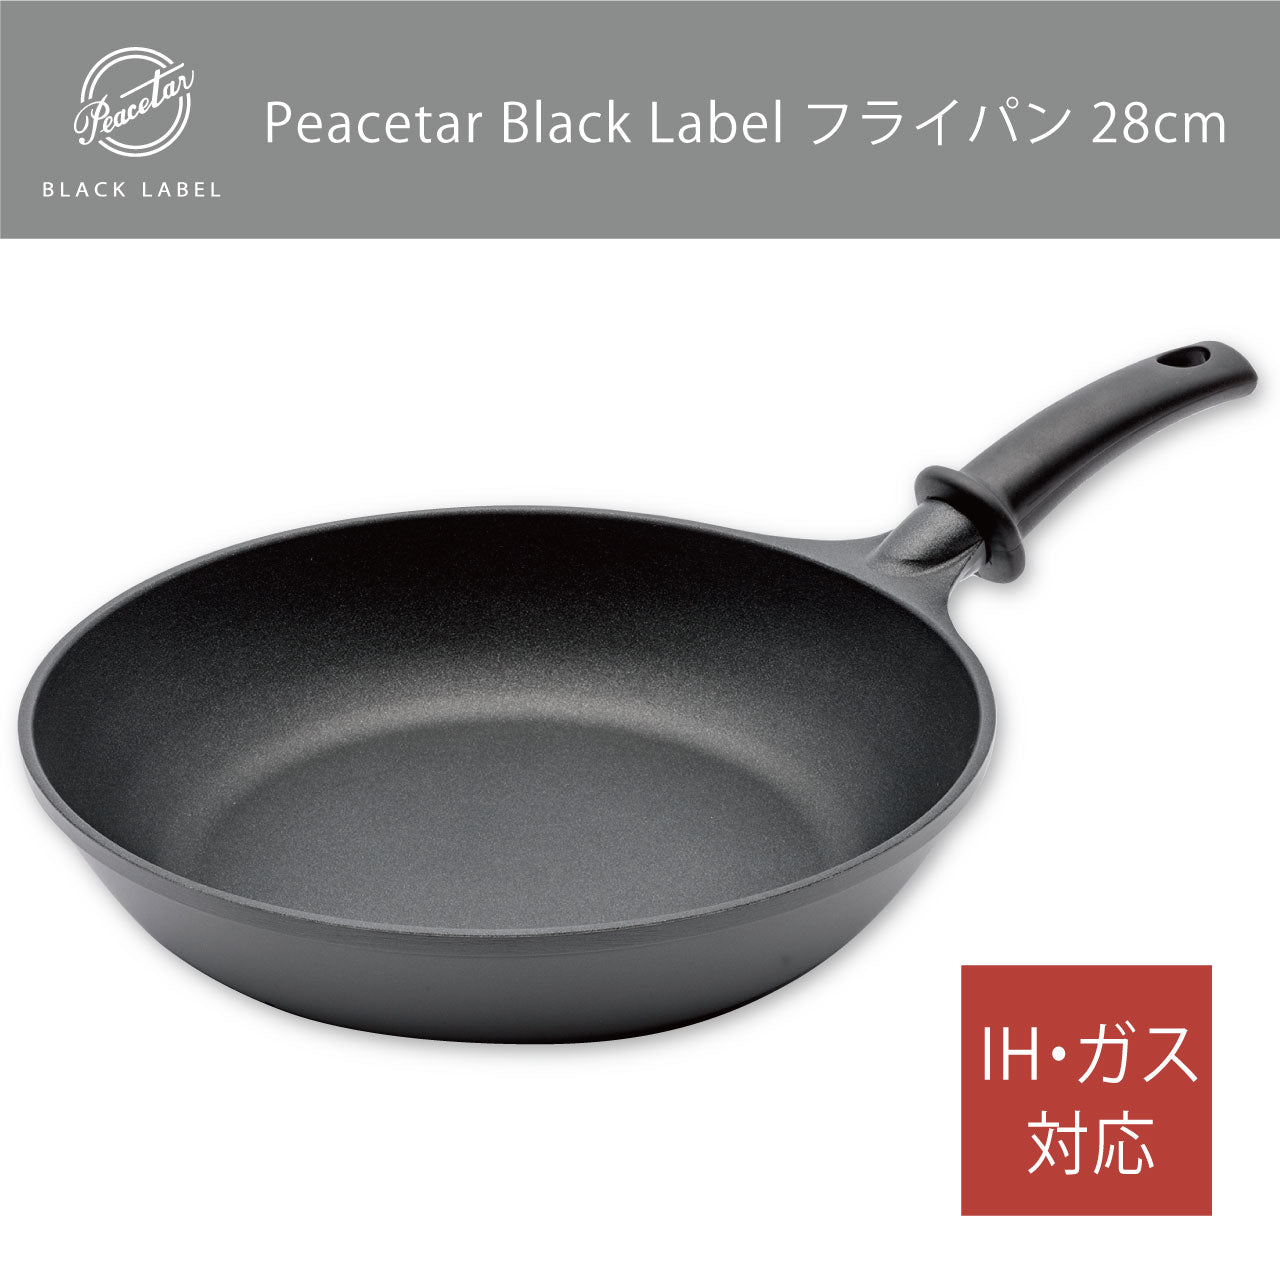 【送料無料】フライパン28cm  当店オリジナル Peacetar Black Label アルミ鋳物フライパン